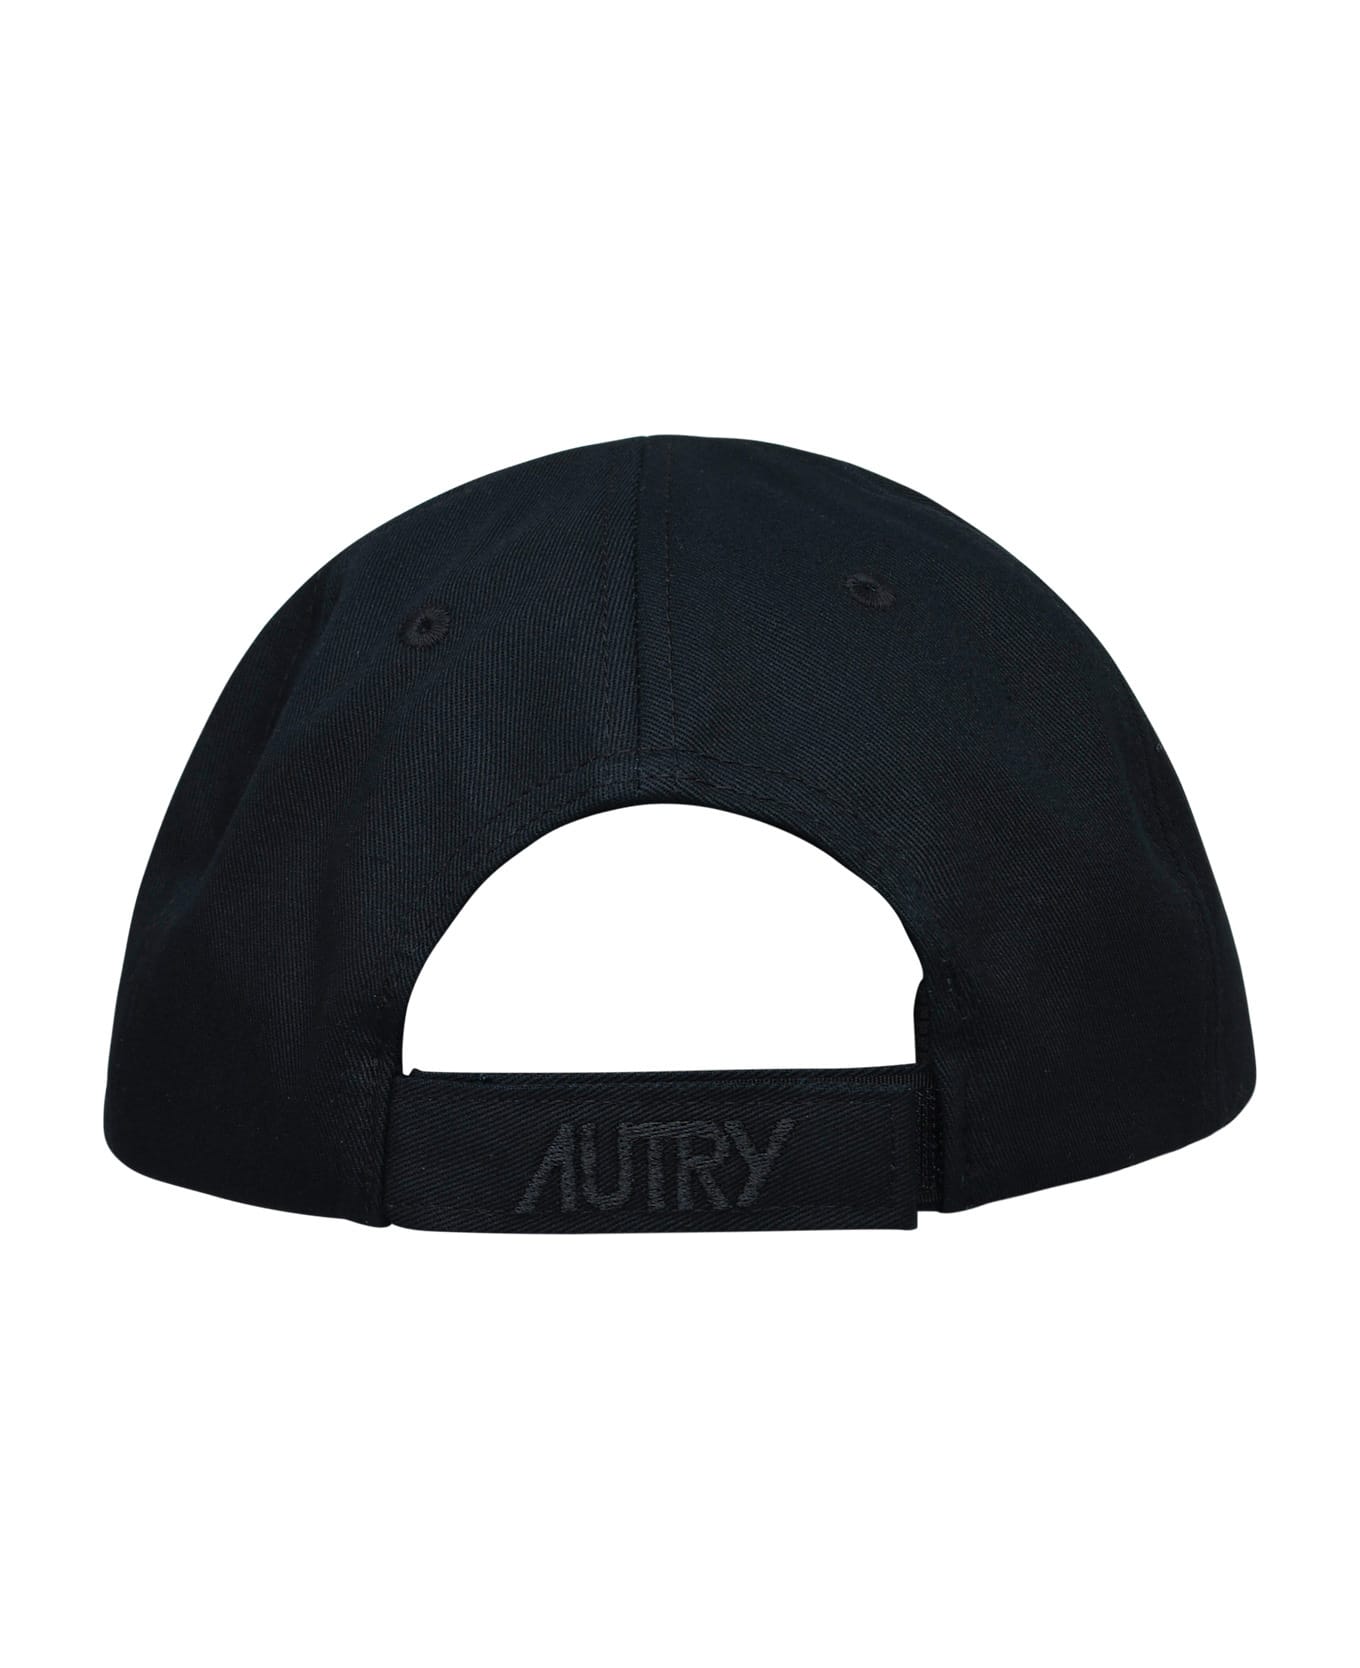 Autry Cotton Hat - Black 帽子